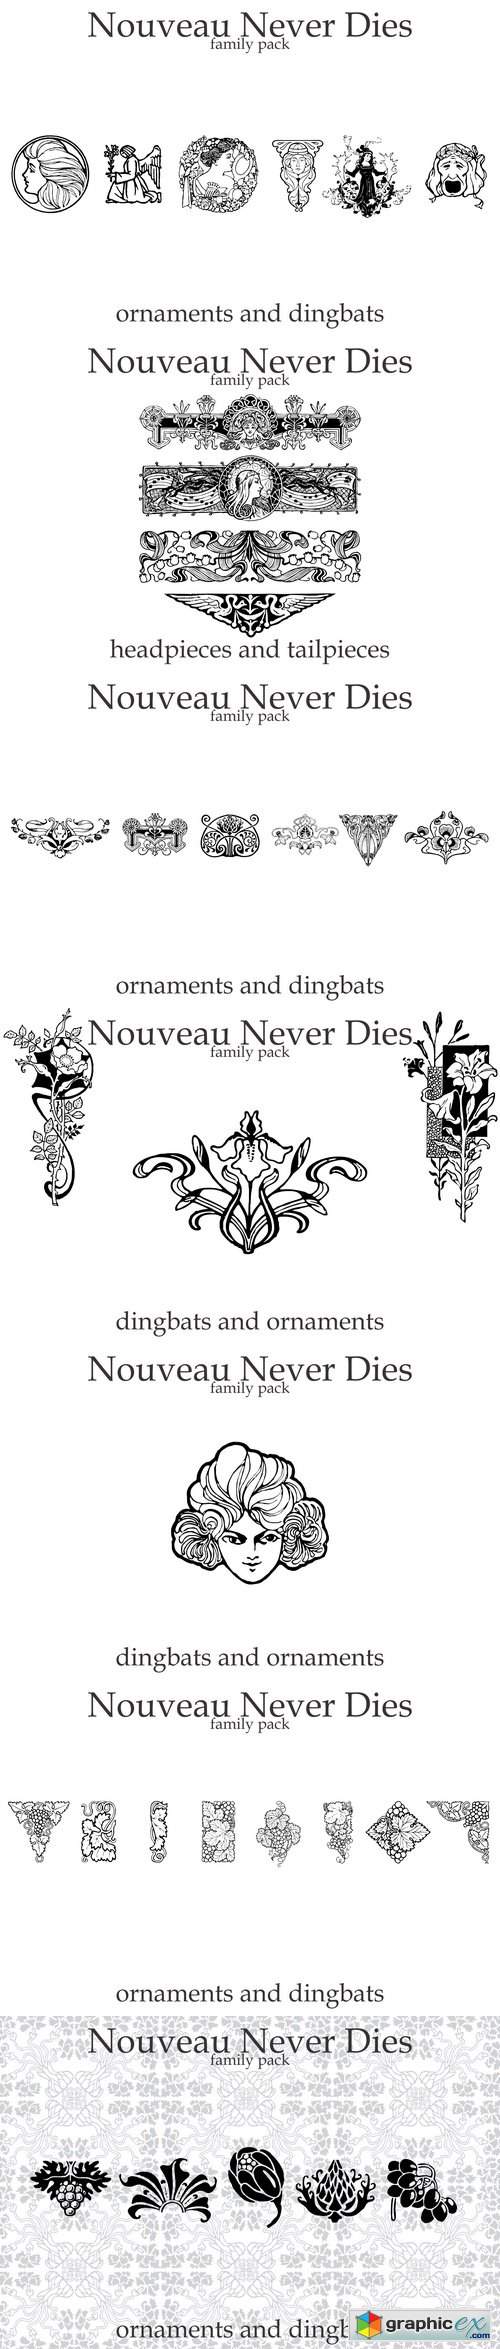 Nouveau Never Dies Family